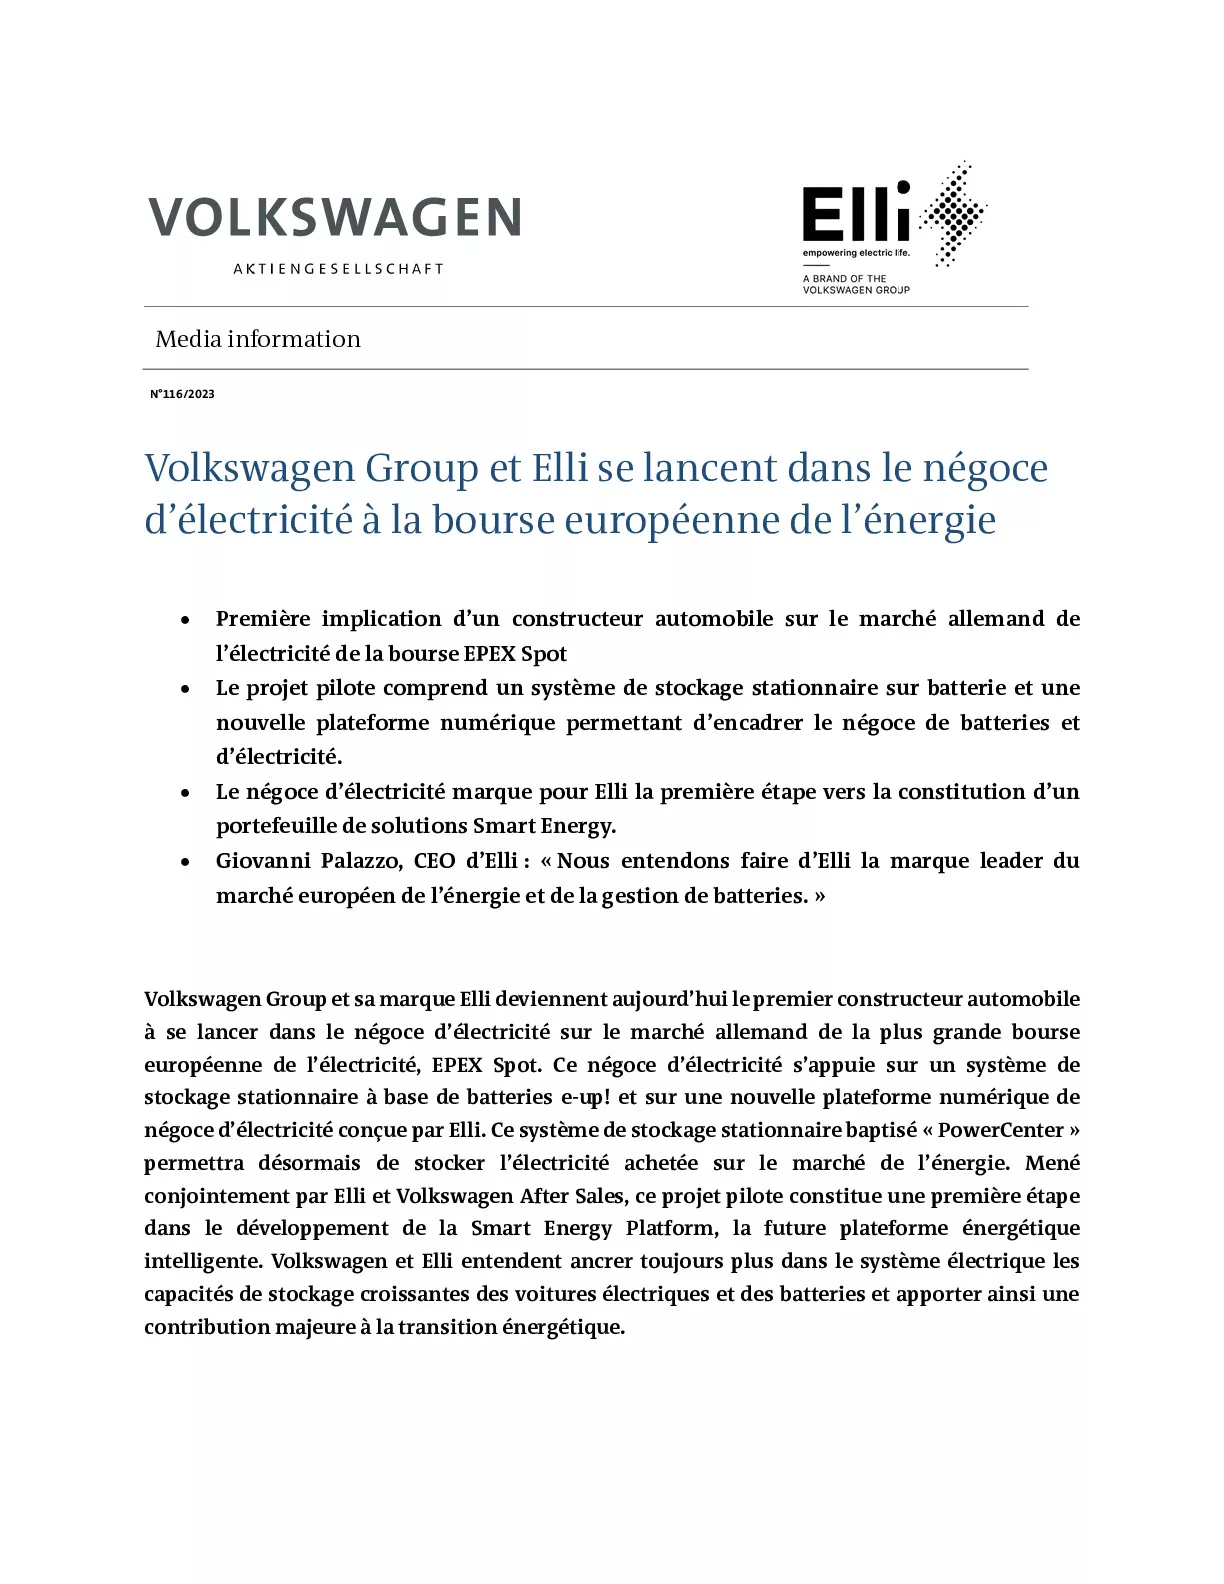 Volkswagen Group et Elli se lancent dans le négoce d’électricité à la bourse européenne de l’énergie-pdf